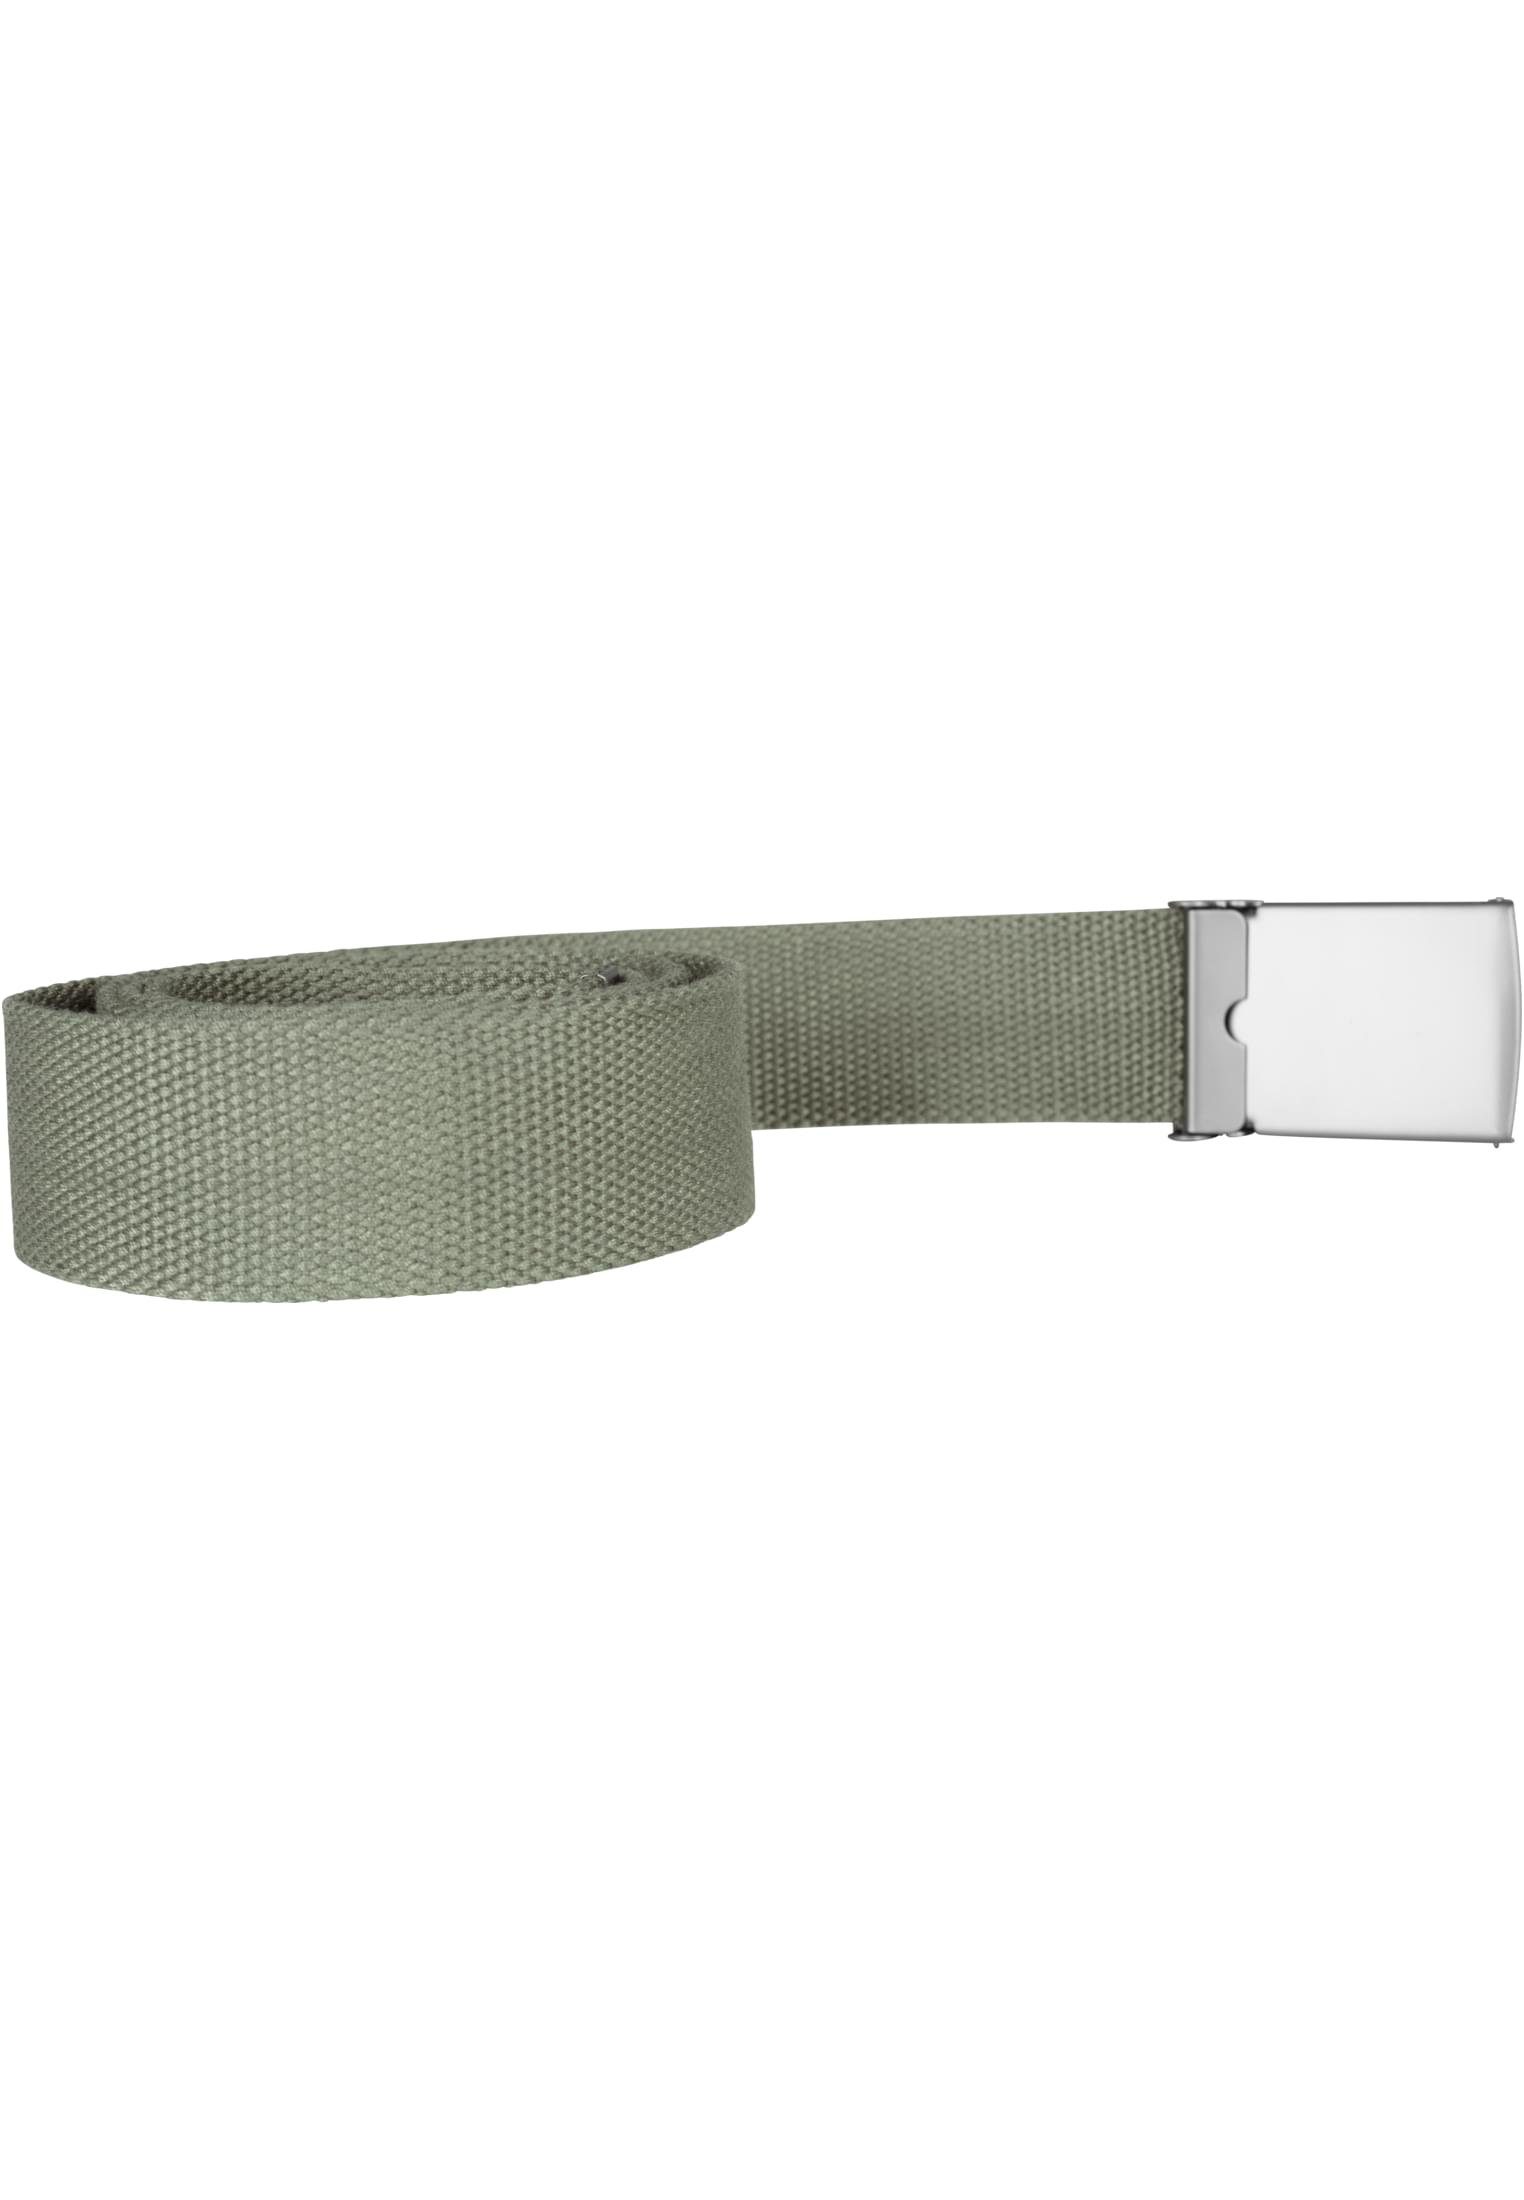 olive Canvas Hüftgürtel CLASSICS URBAN Accessoires Belts